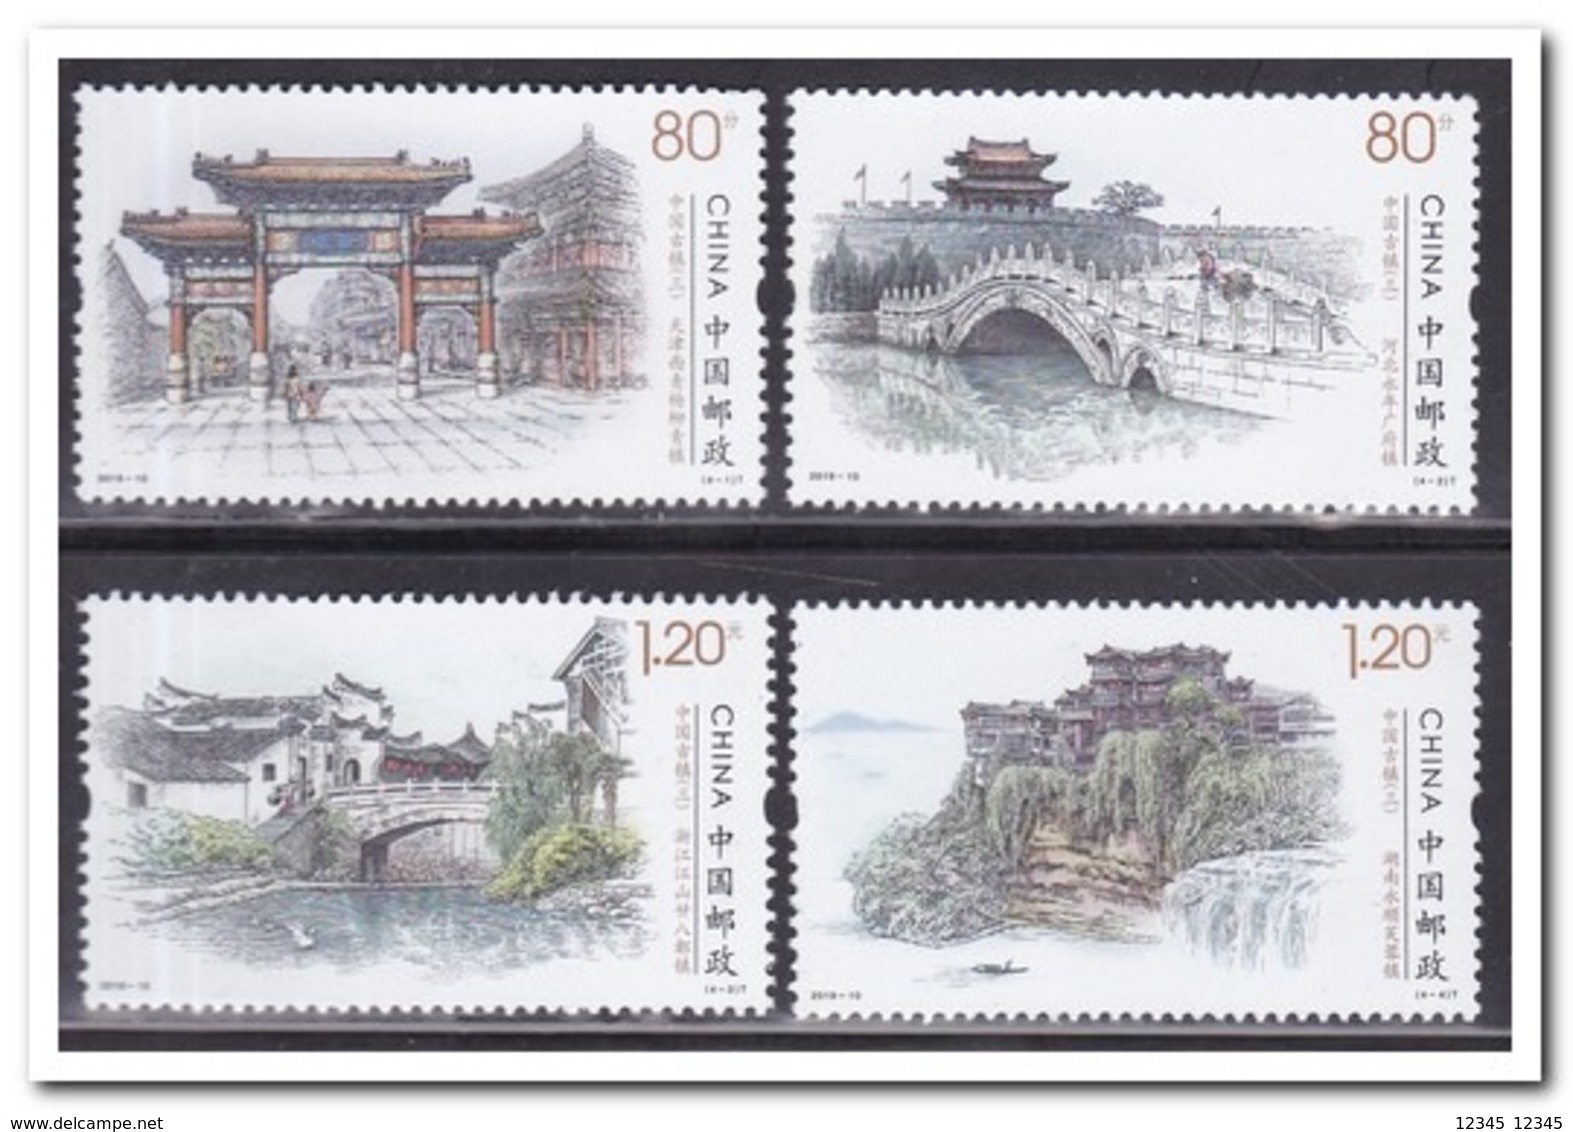 China 2019, Postfris MNH, 2019-10, Building, Bridges - Ongebruikt